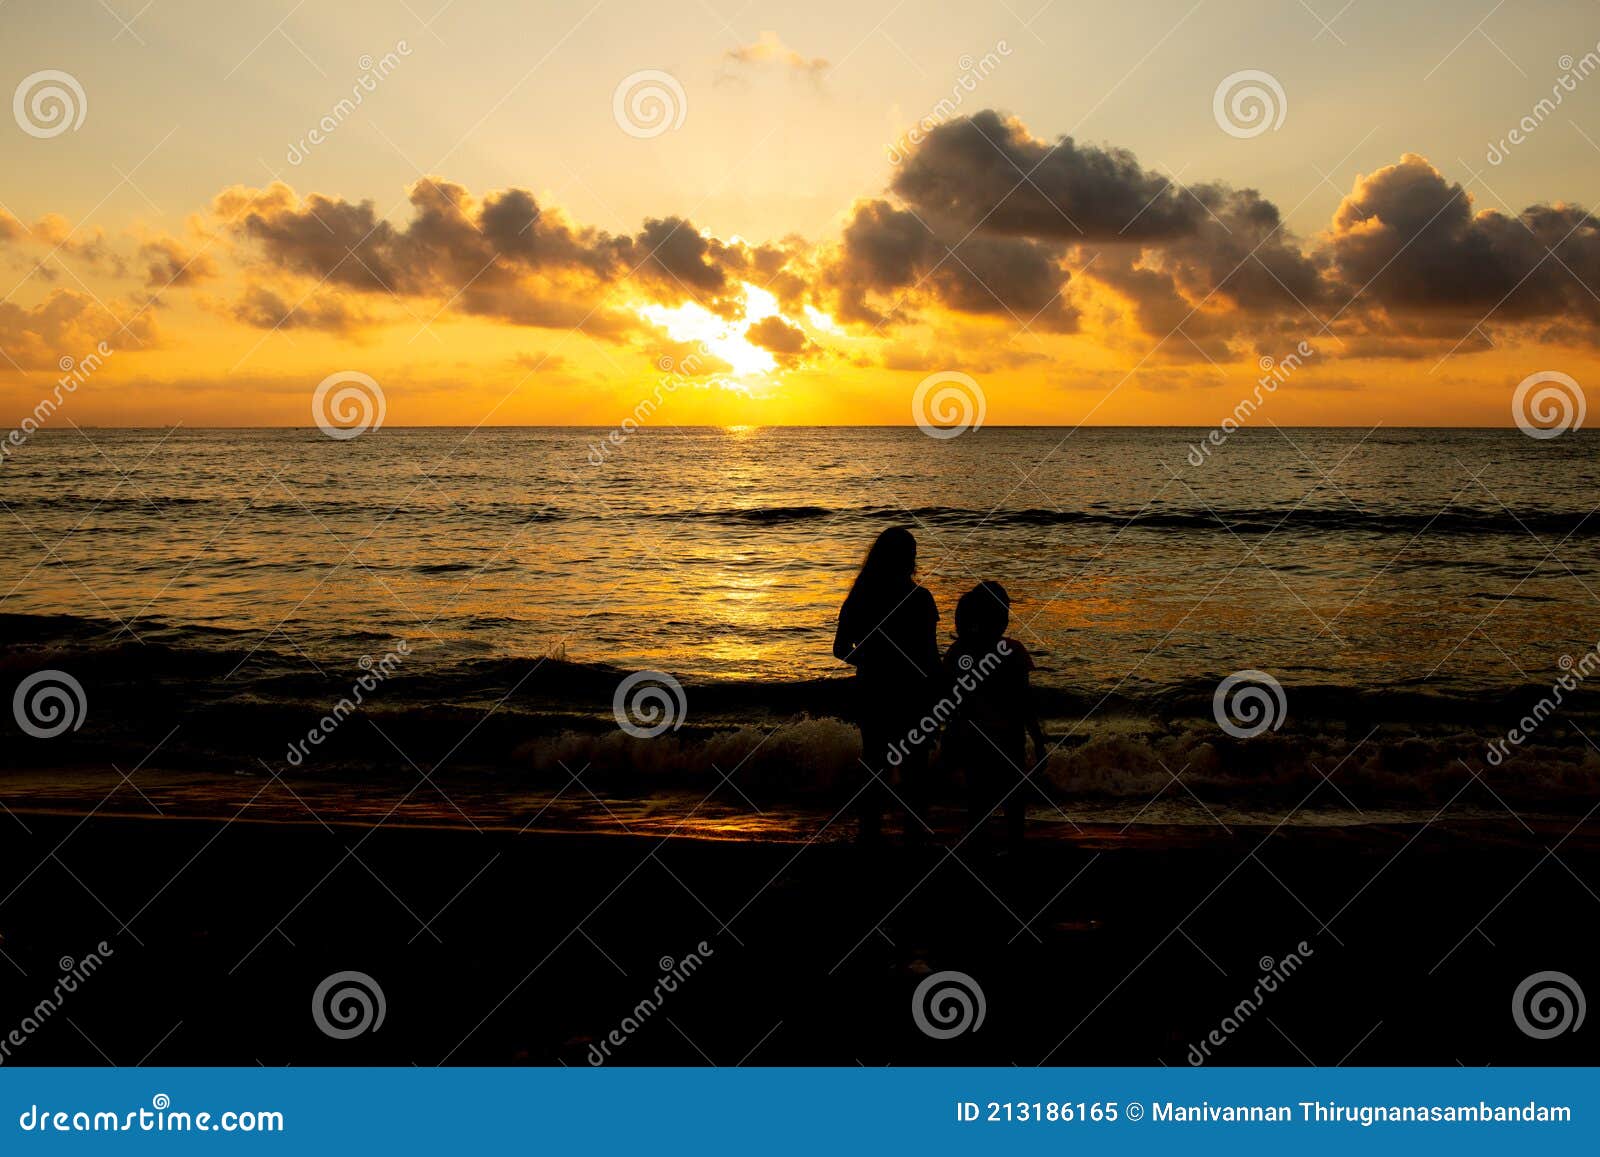 Kids in Silhouette Watching the Sunrise in Marina Beach, Chennai, India ...